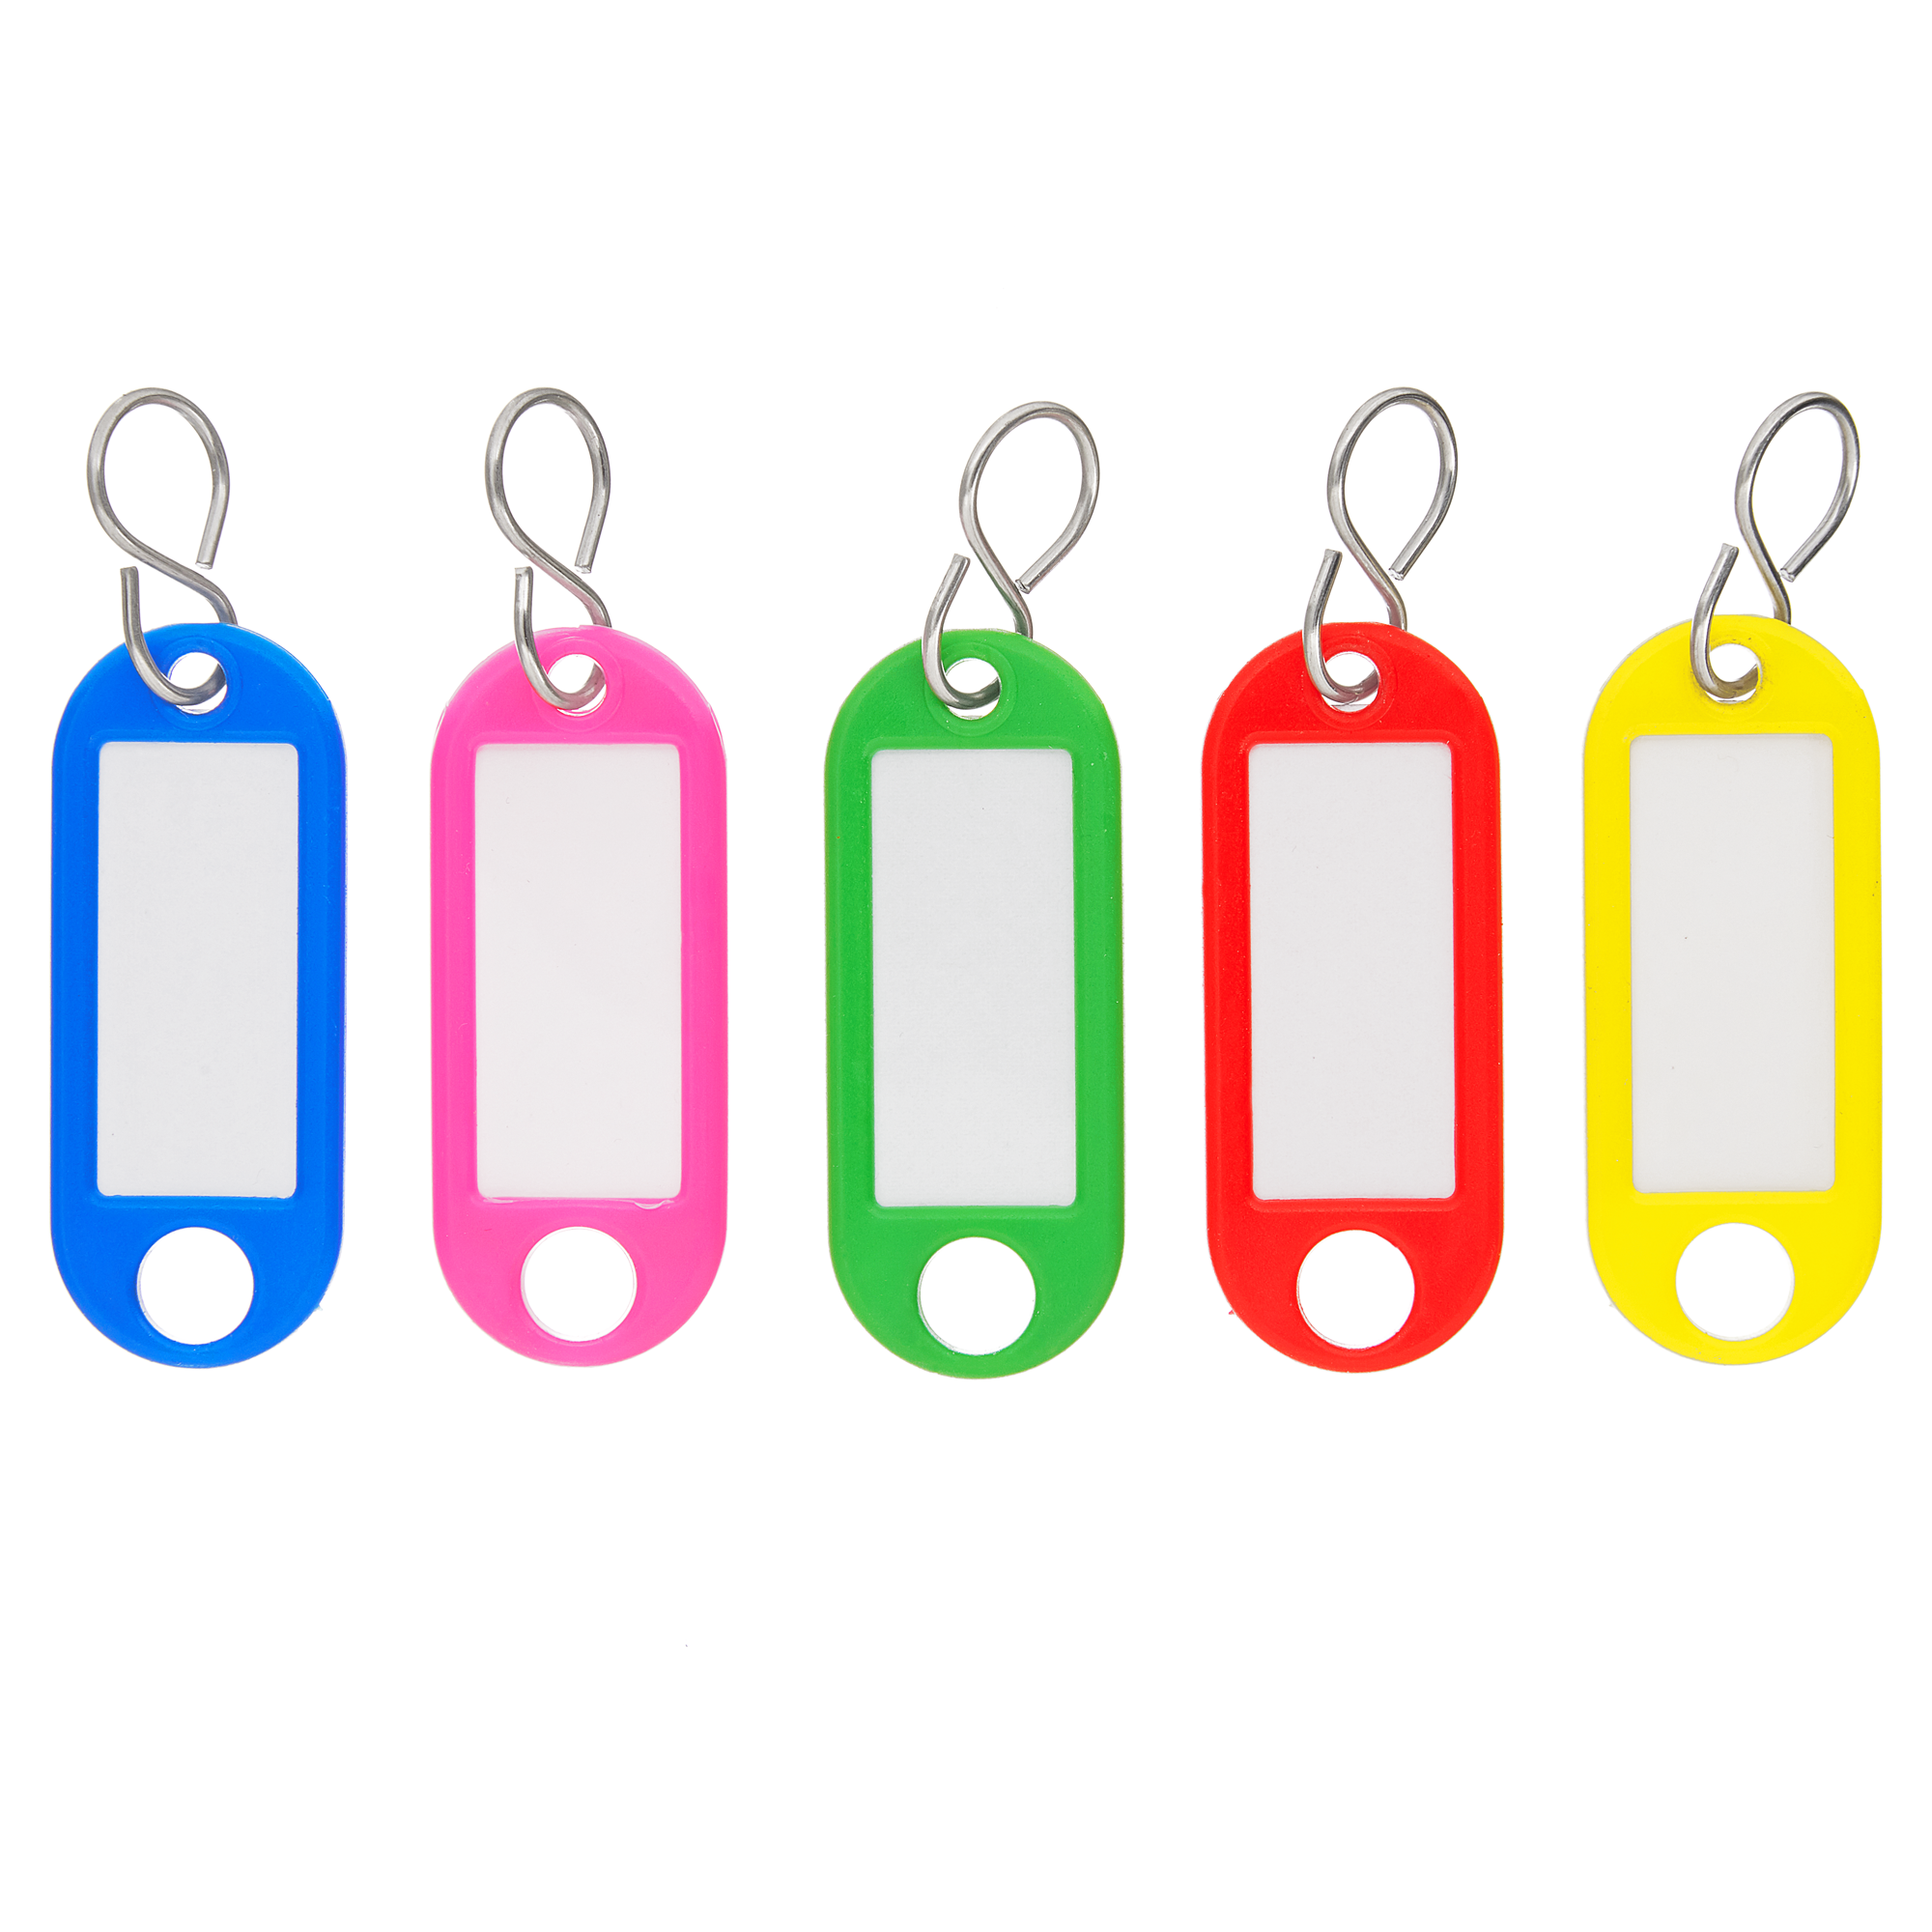 Schlüsselanhänger diverse Farben 5 Stück + product picture